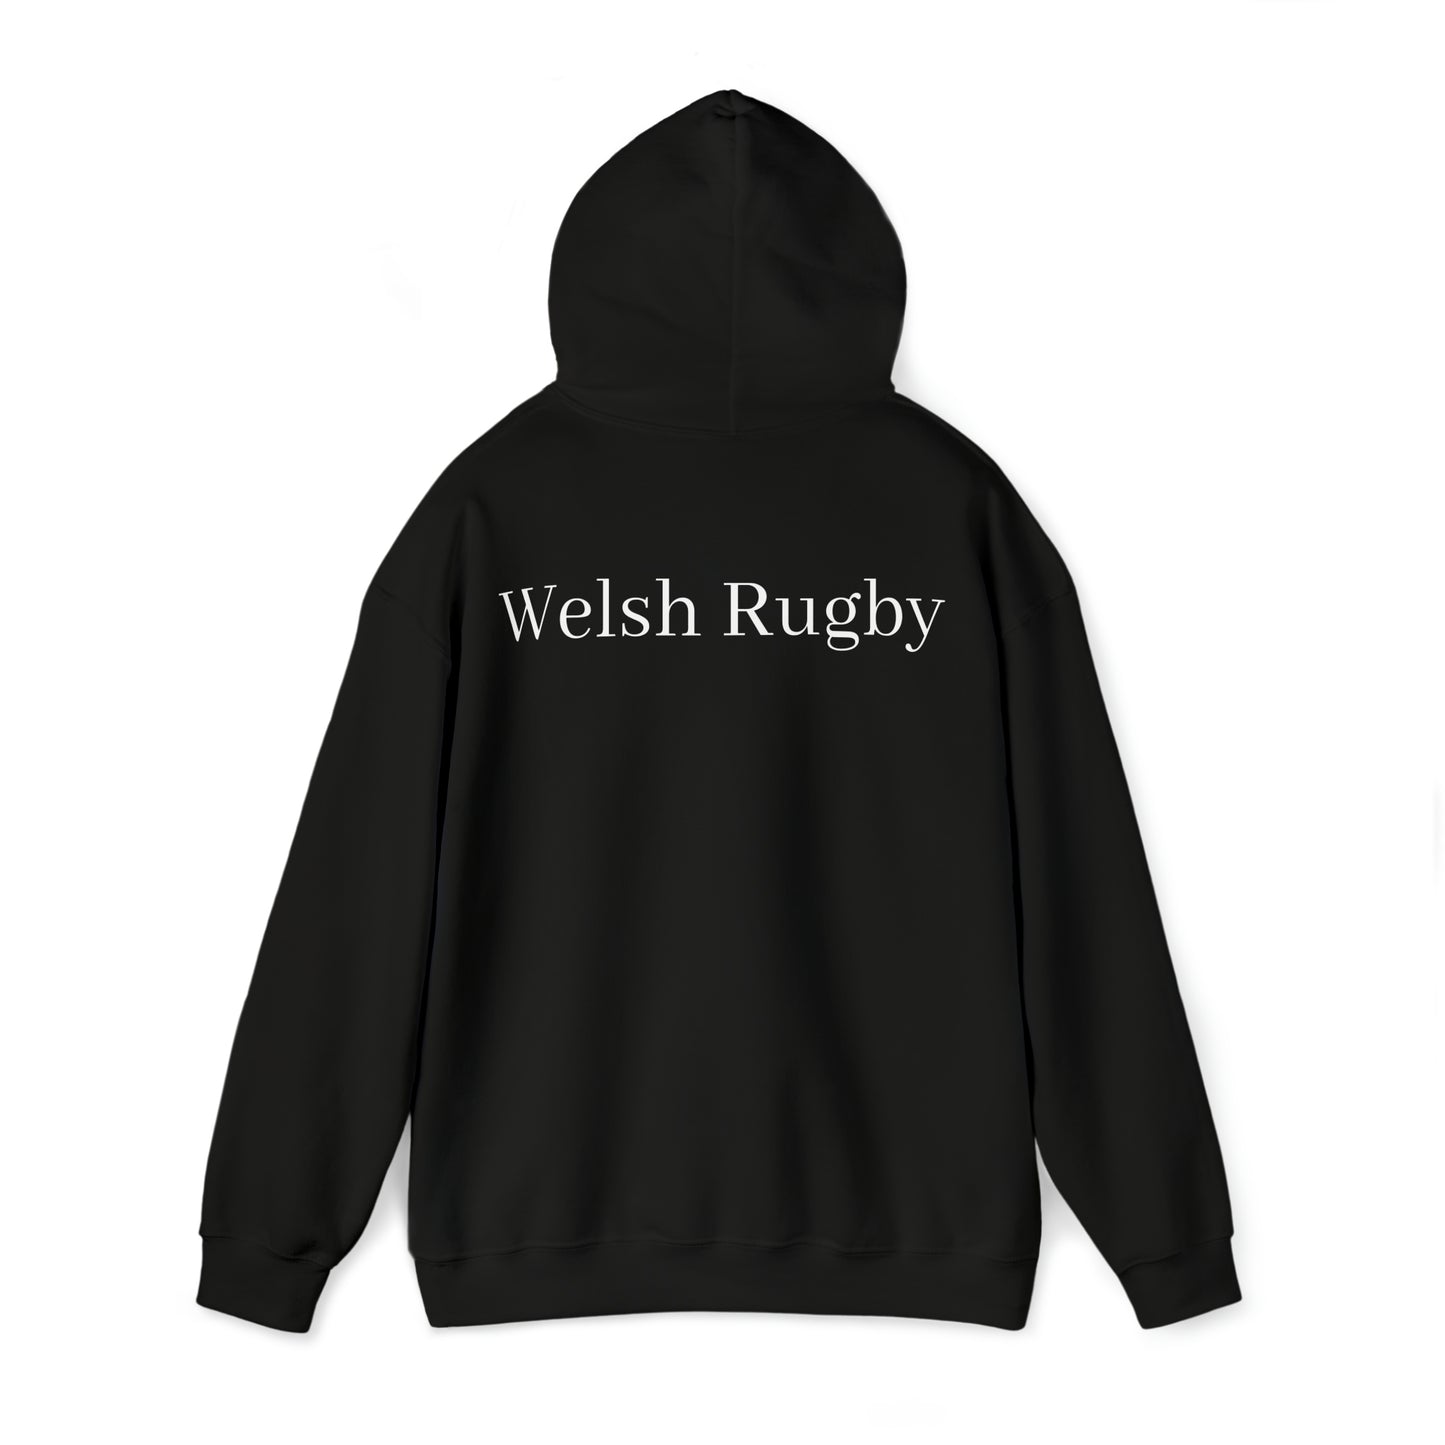 Ready Wales - dark hoodies